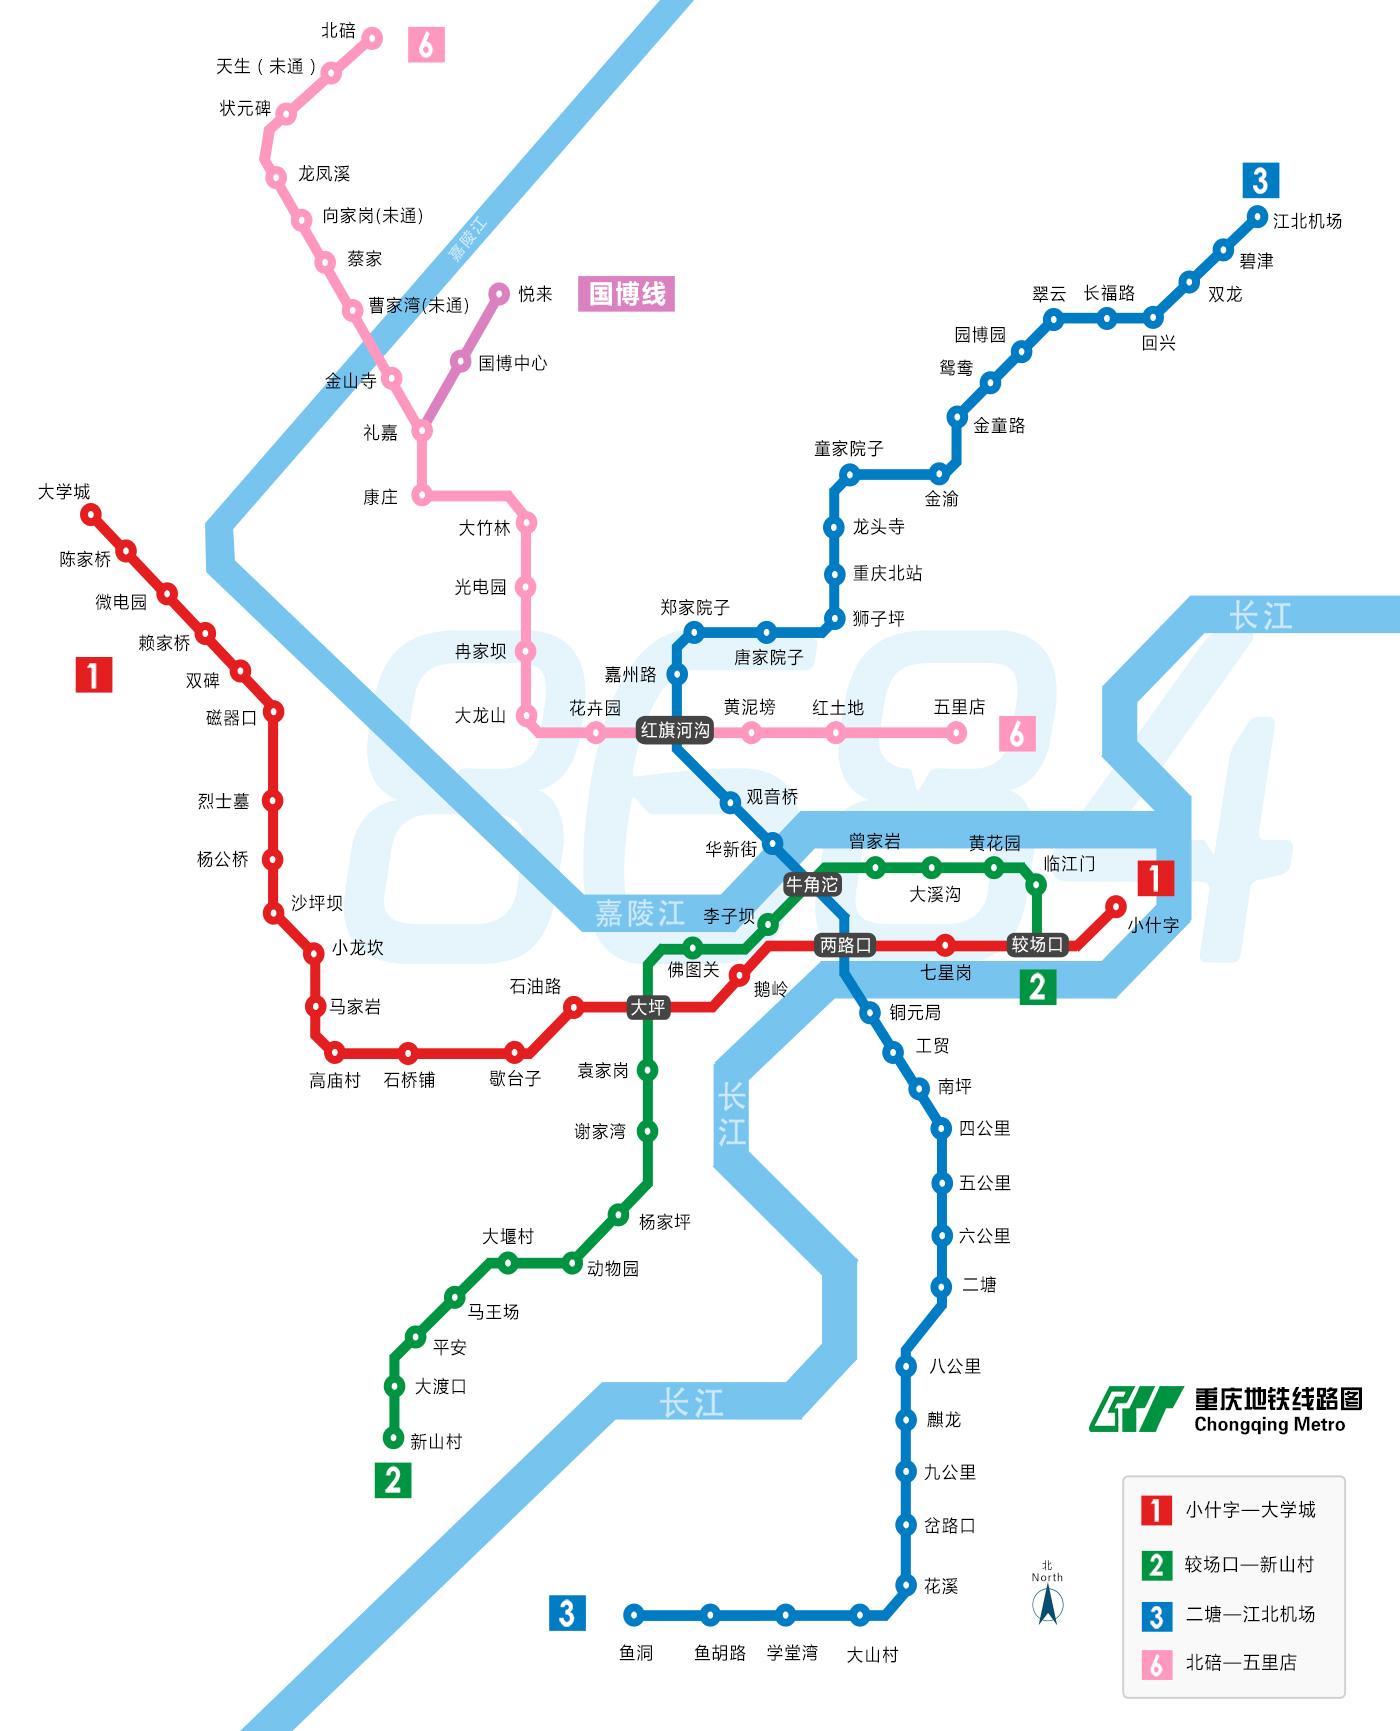 重庆地铁21号线图片